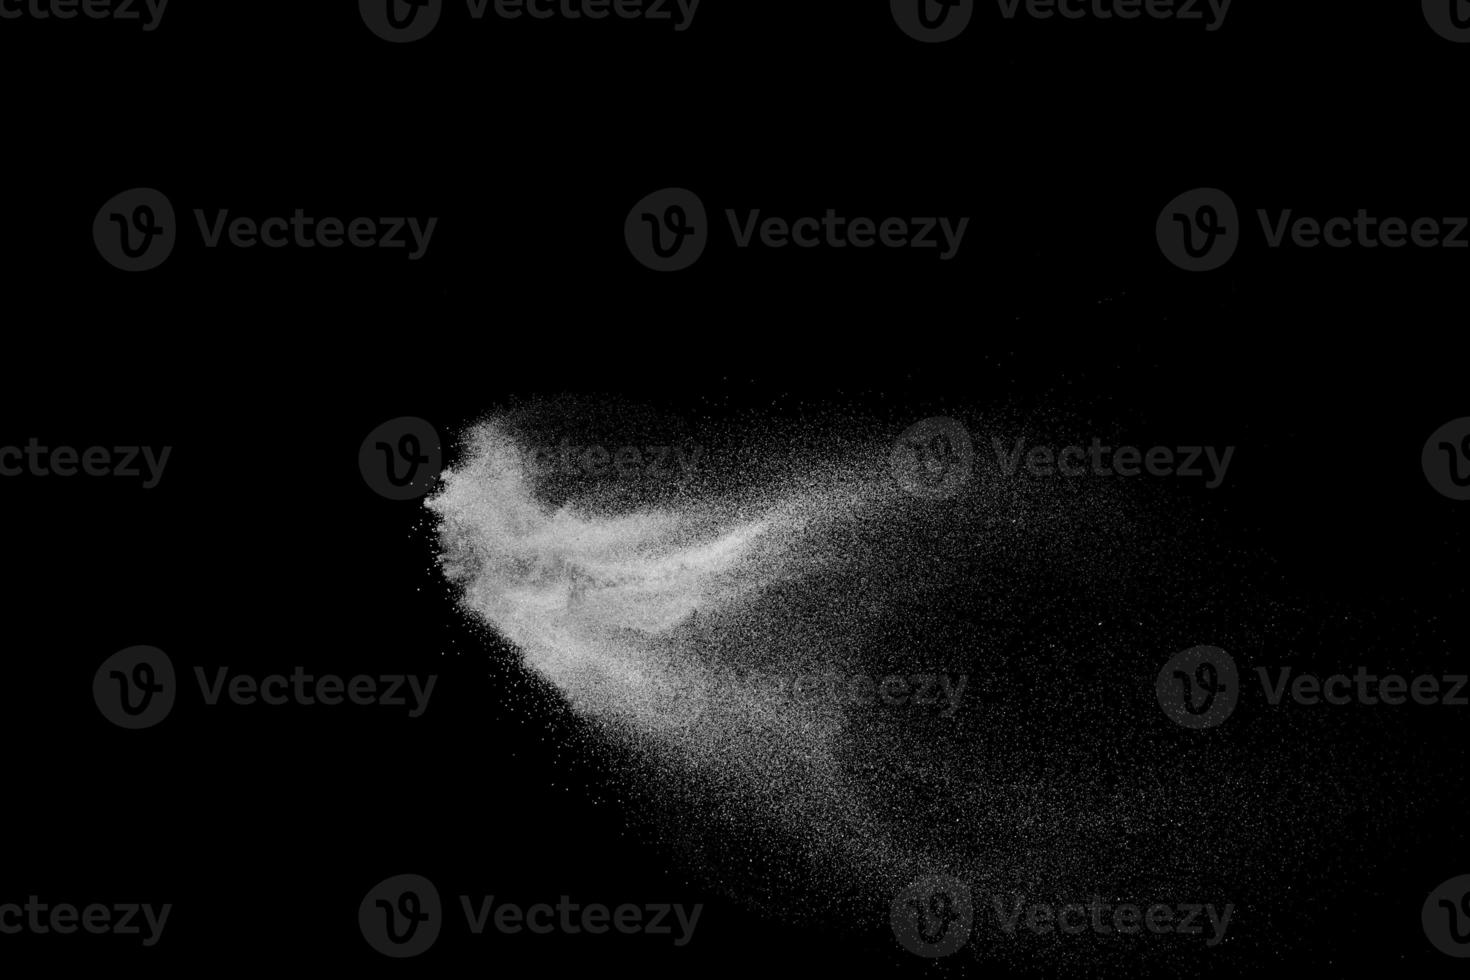 witte poeder explosie wolk tegen zwarte background.white stofdeeltjes splash. foto